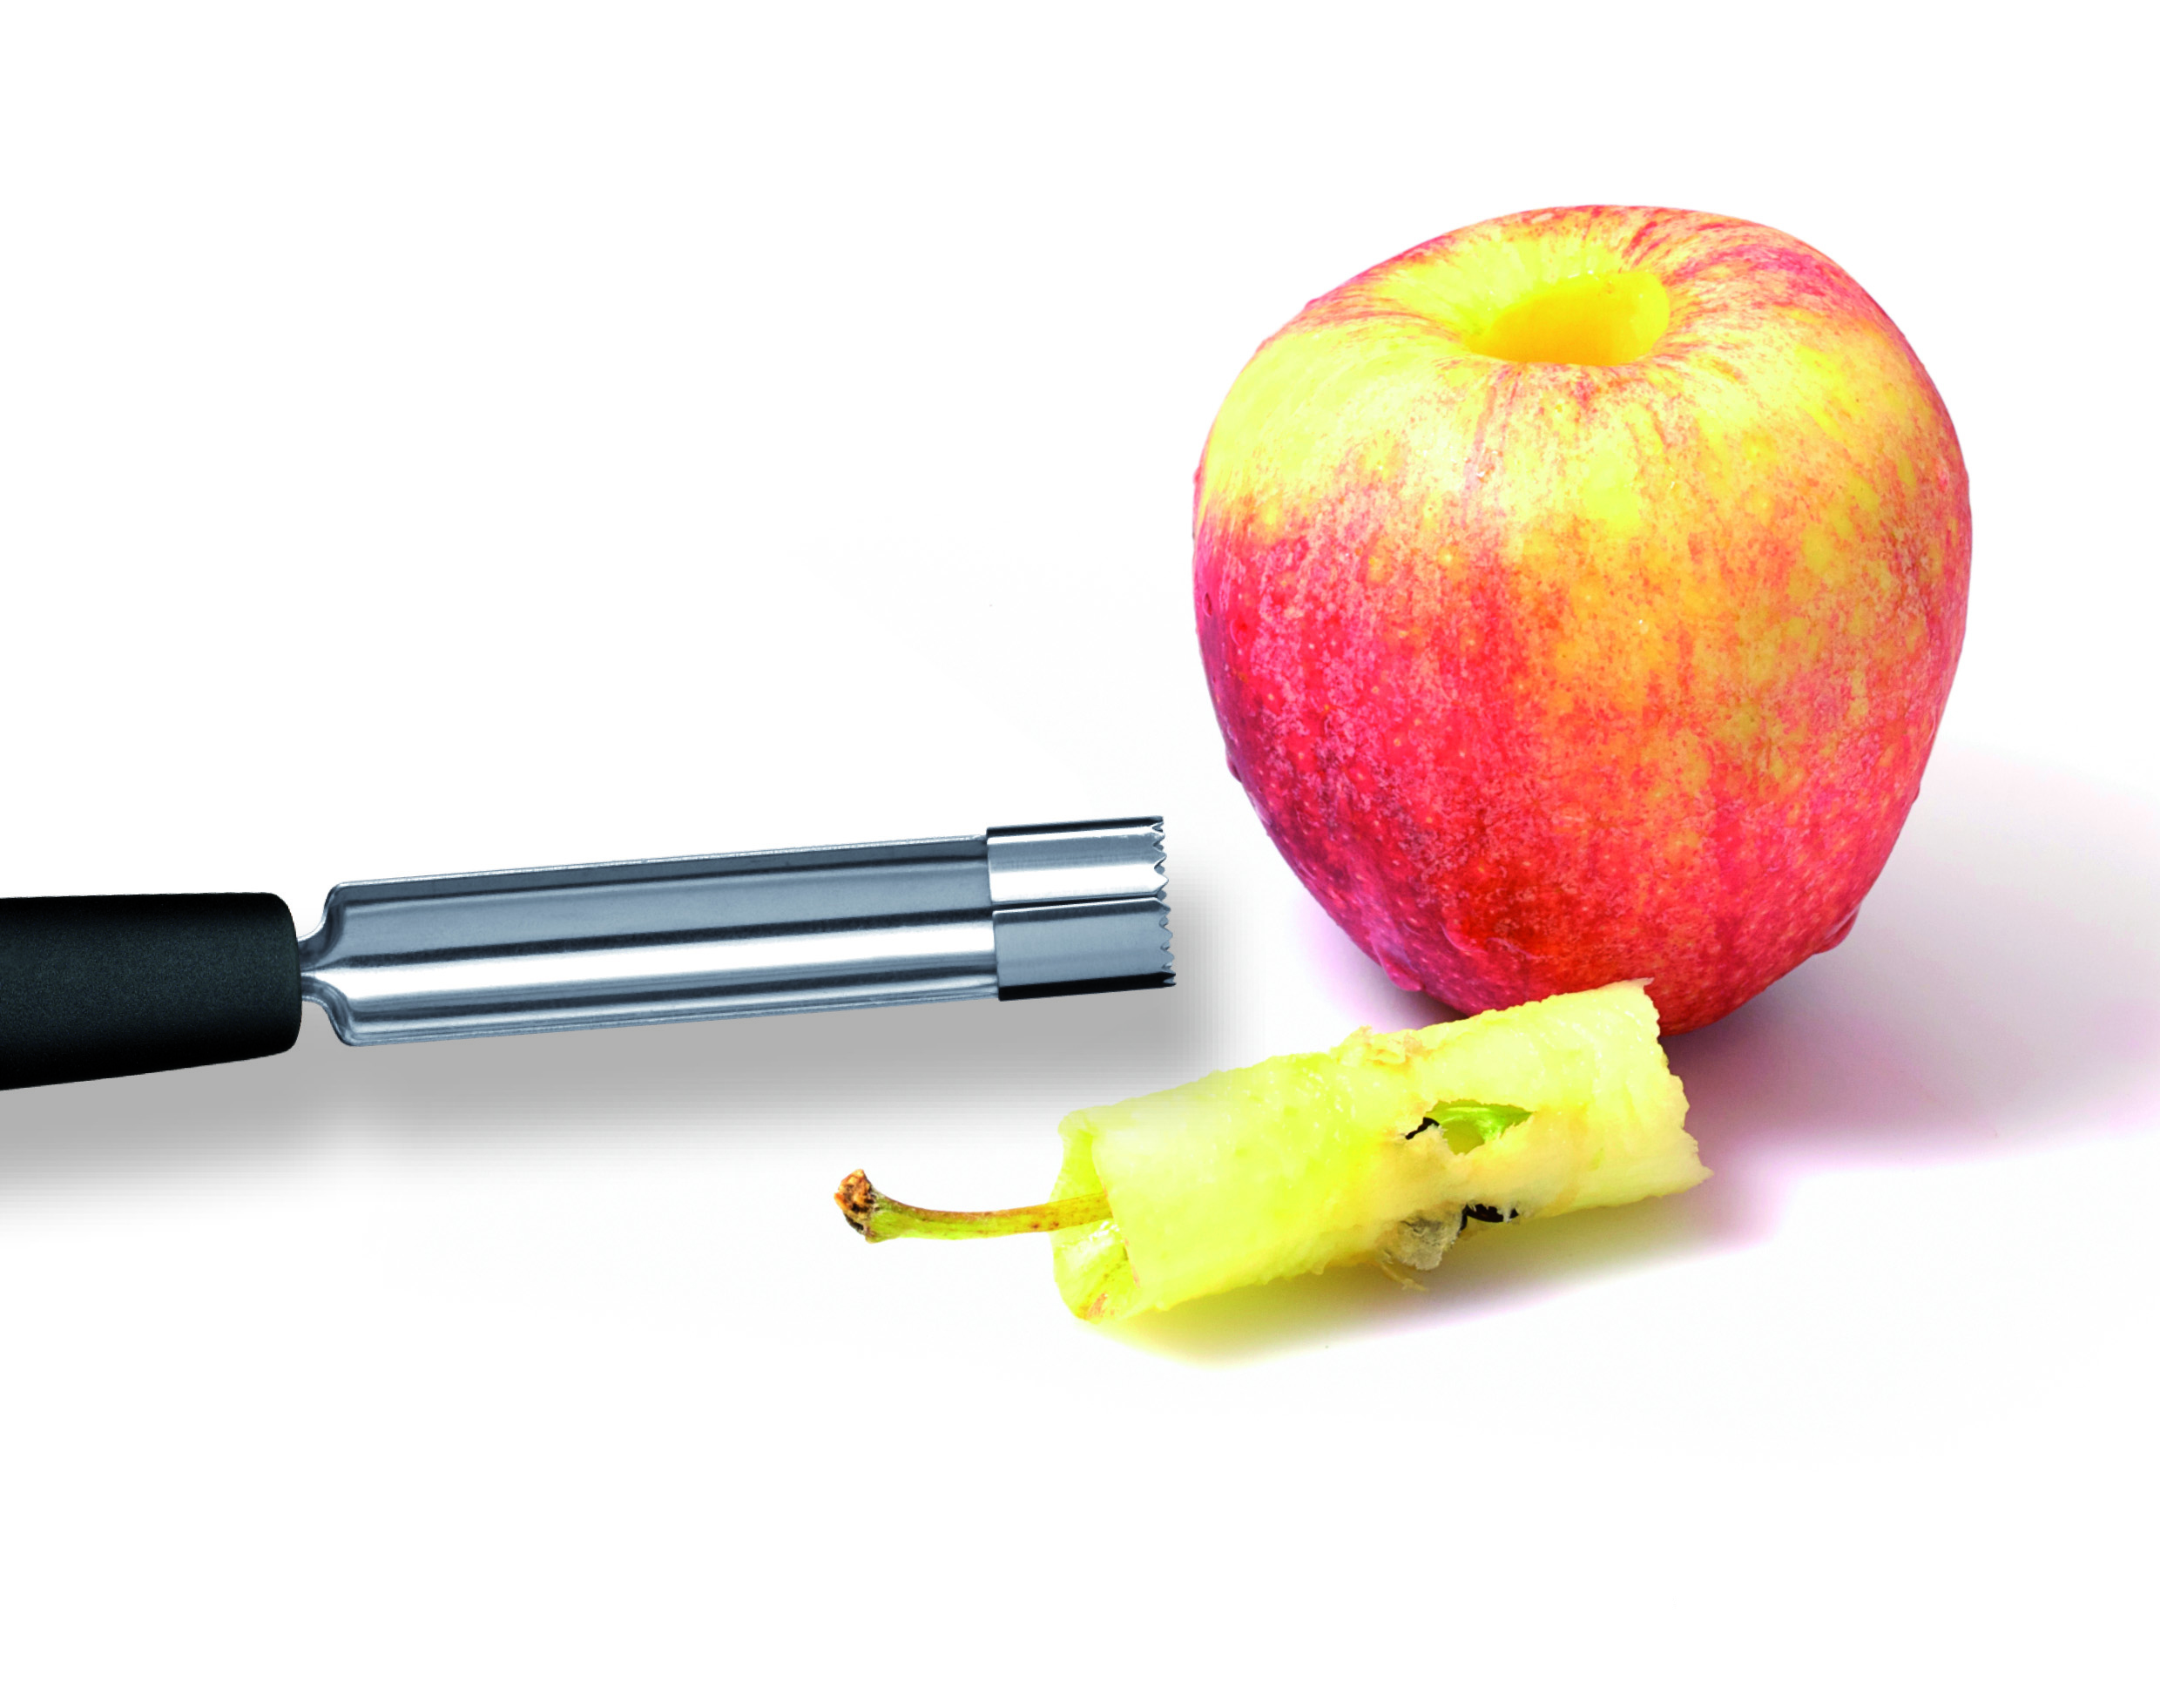 Перед обработкой из яблок иногда вырезают сердцевину. Нож для вырезания сердцевины. Удалитель сердцевины у яблок. Нож для яблок. Прибор для вырезания сердцевины яблока.